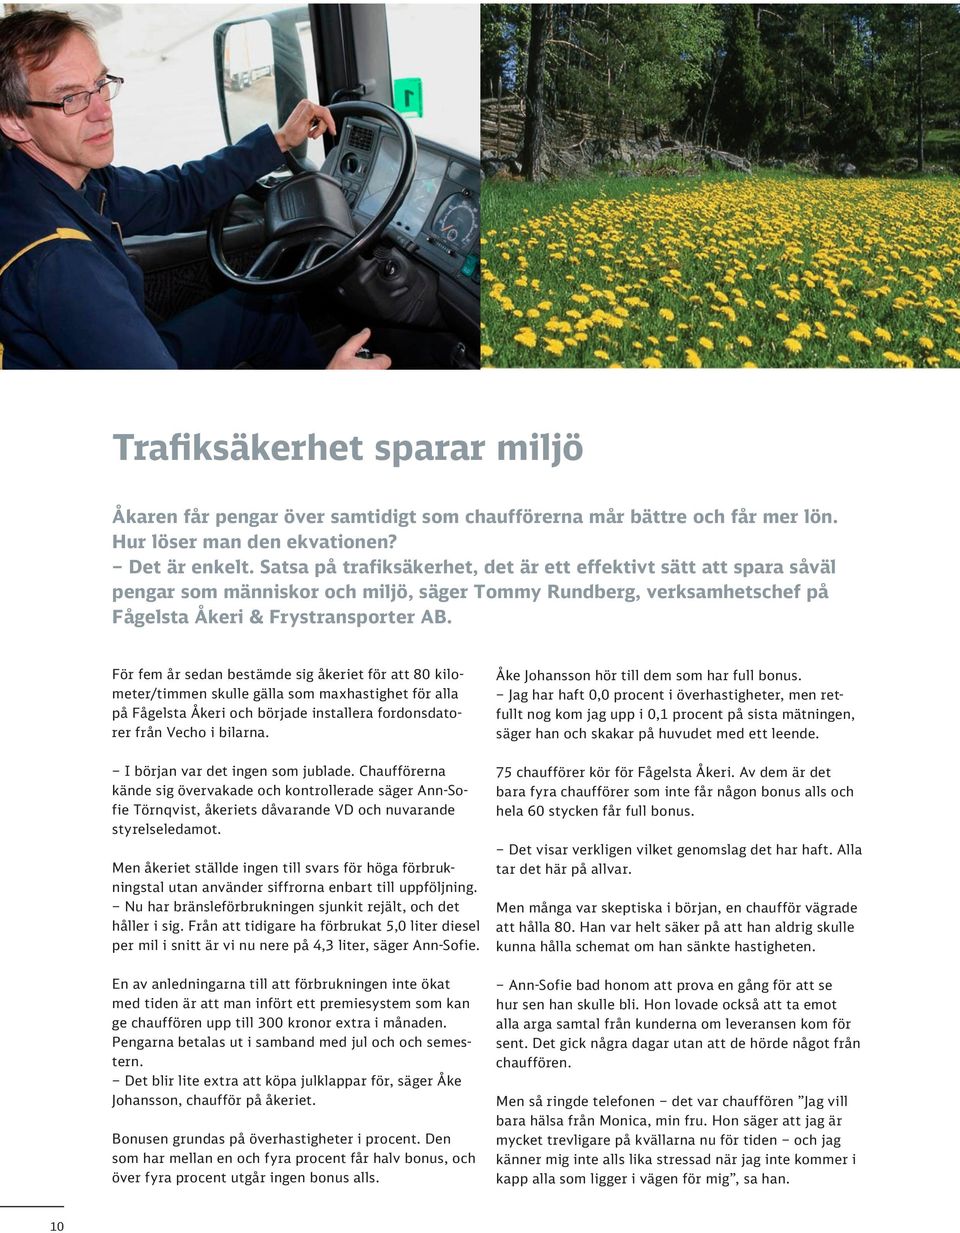 För fem år sedan bestämde sig åkeriet för att 80 kilometer/timmen skulle gälla som maxhastighet för alla på Fågelsta Åkeri och började installera fordonsdatorer från Vecho i bilarna.